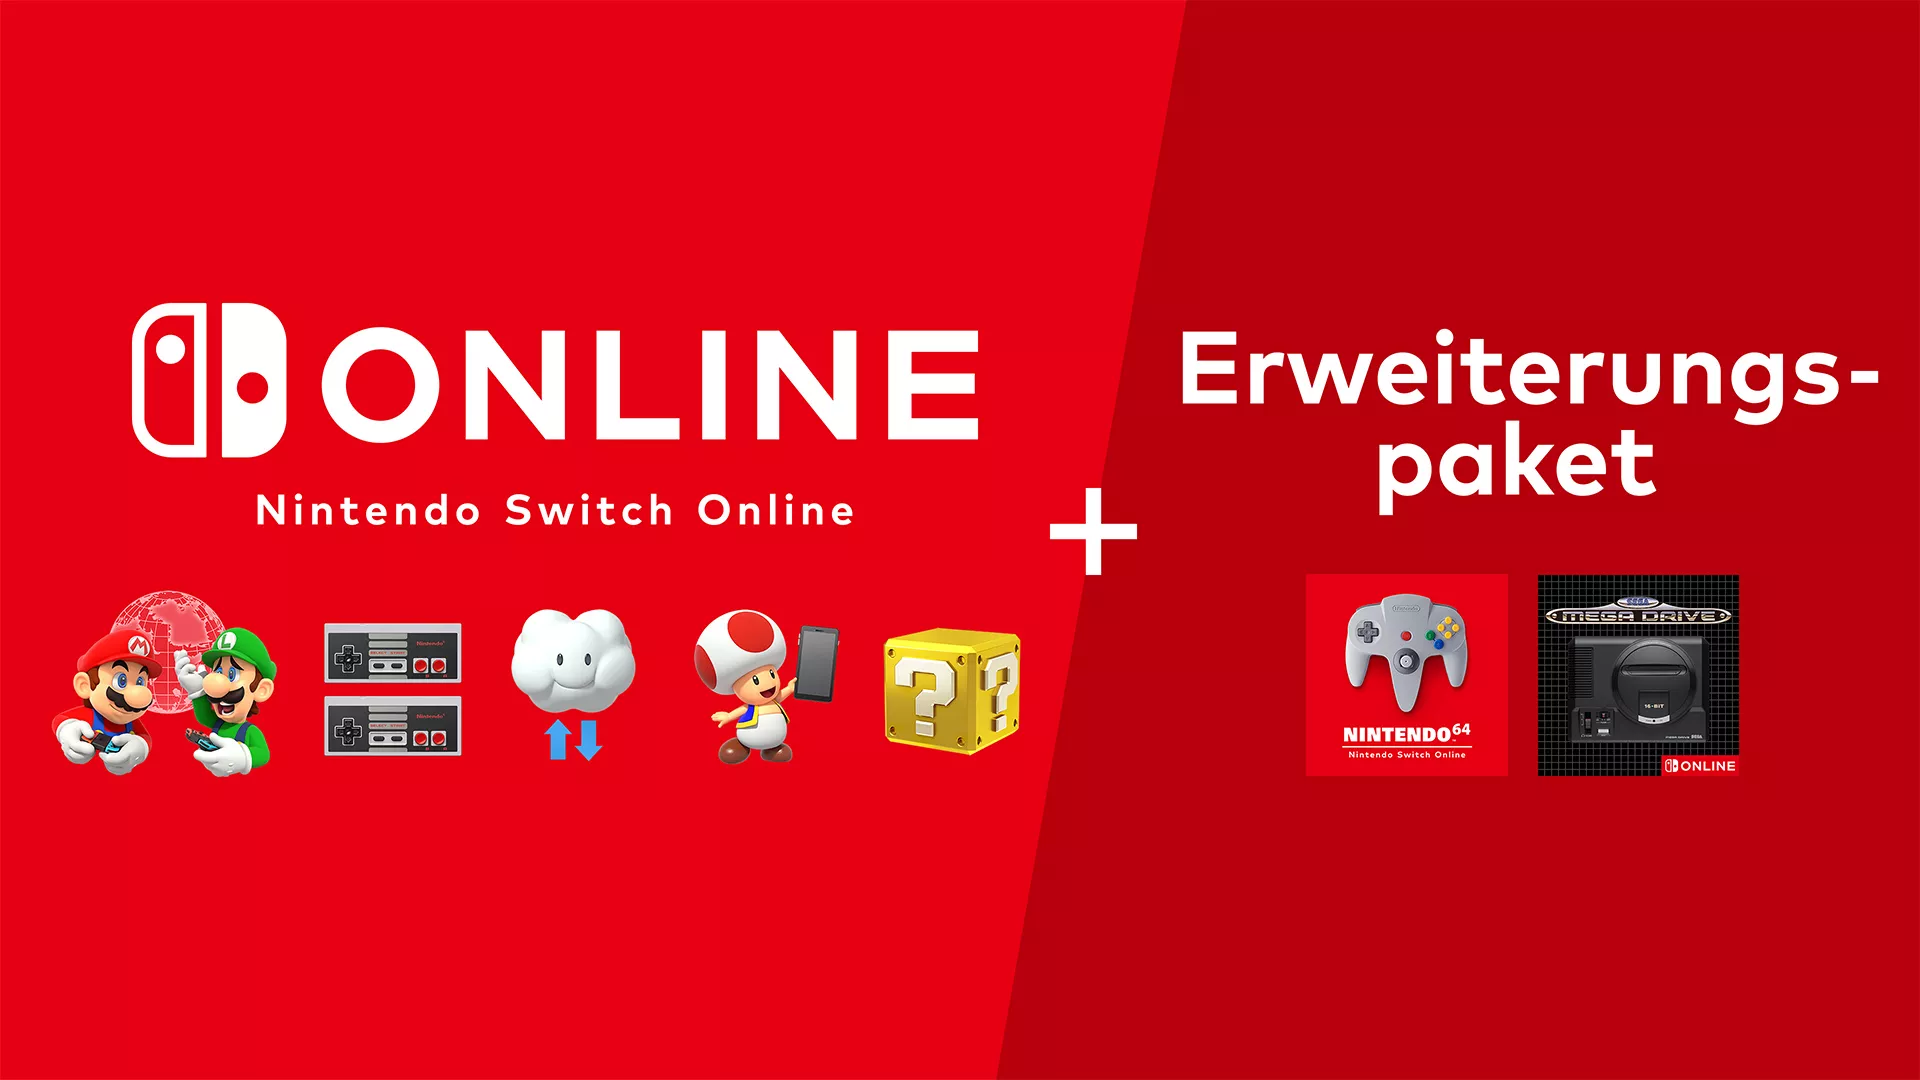 Nintendo Switch Online: Erweiterungspaket Preis enthüllt Heropic